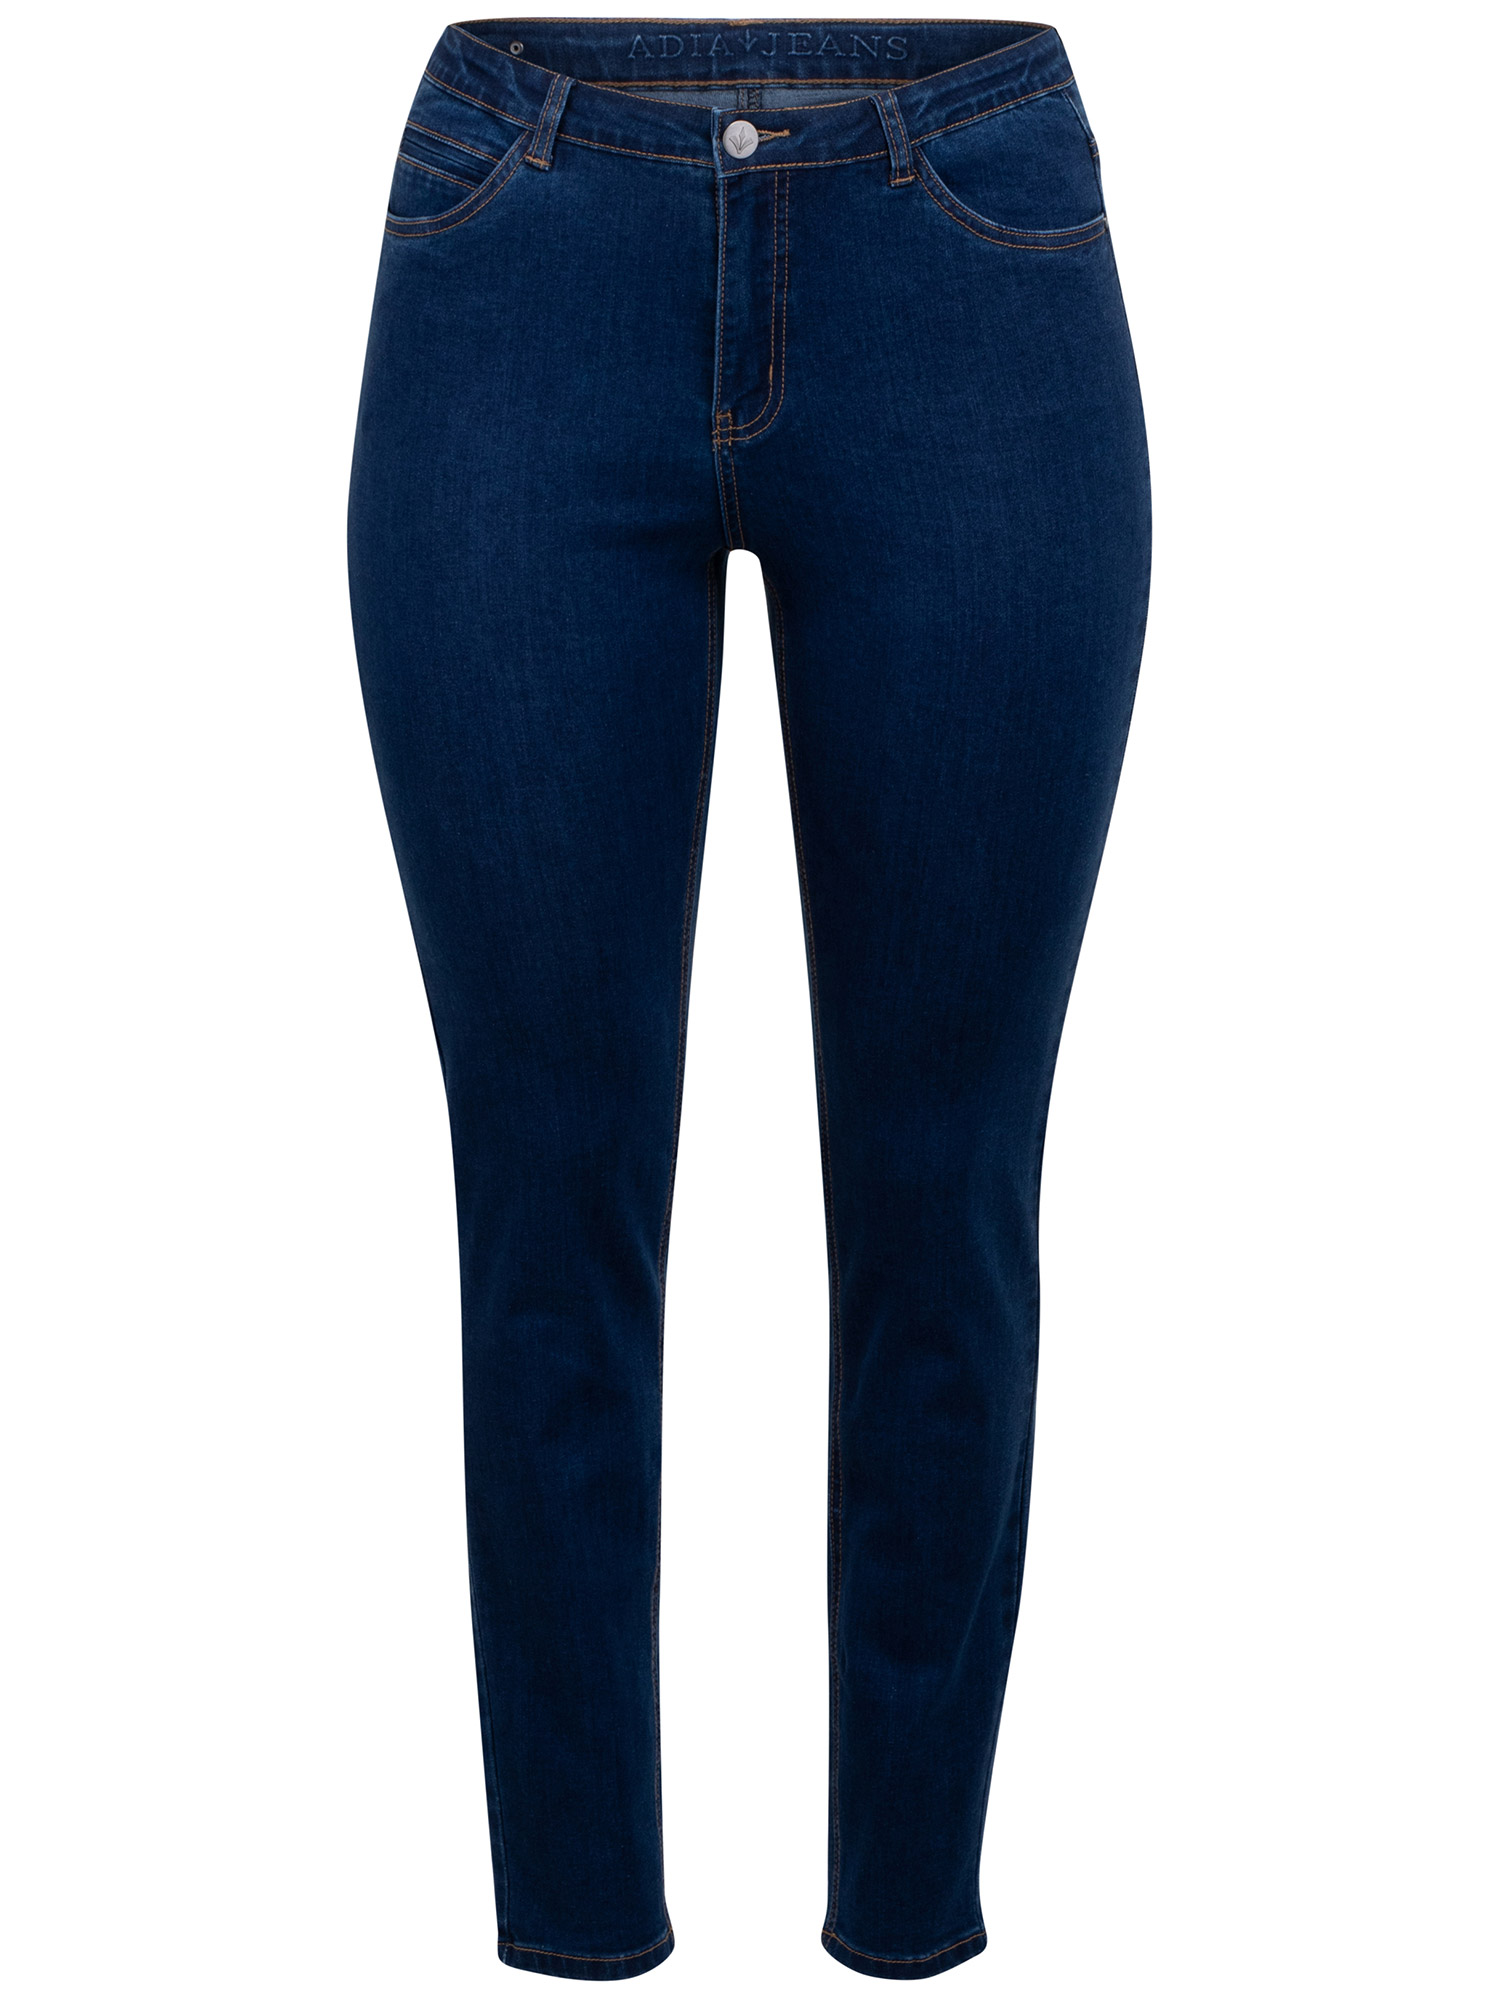 MILAN - Blå jeans fra Adia